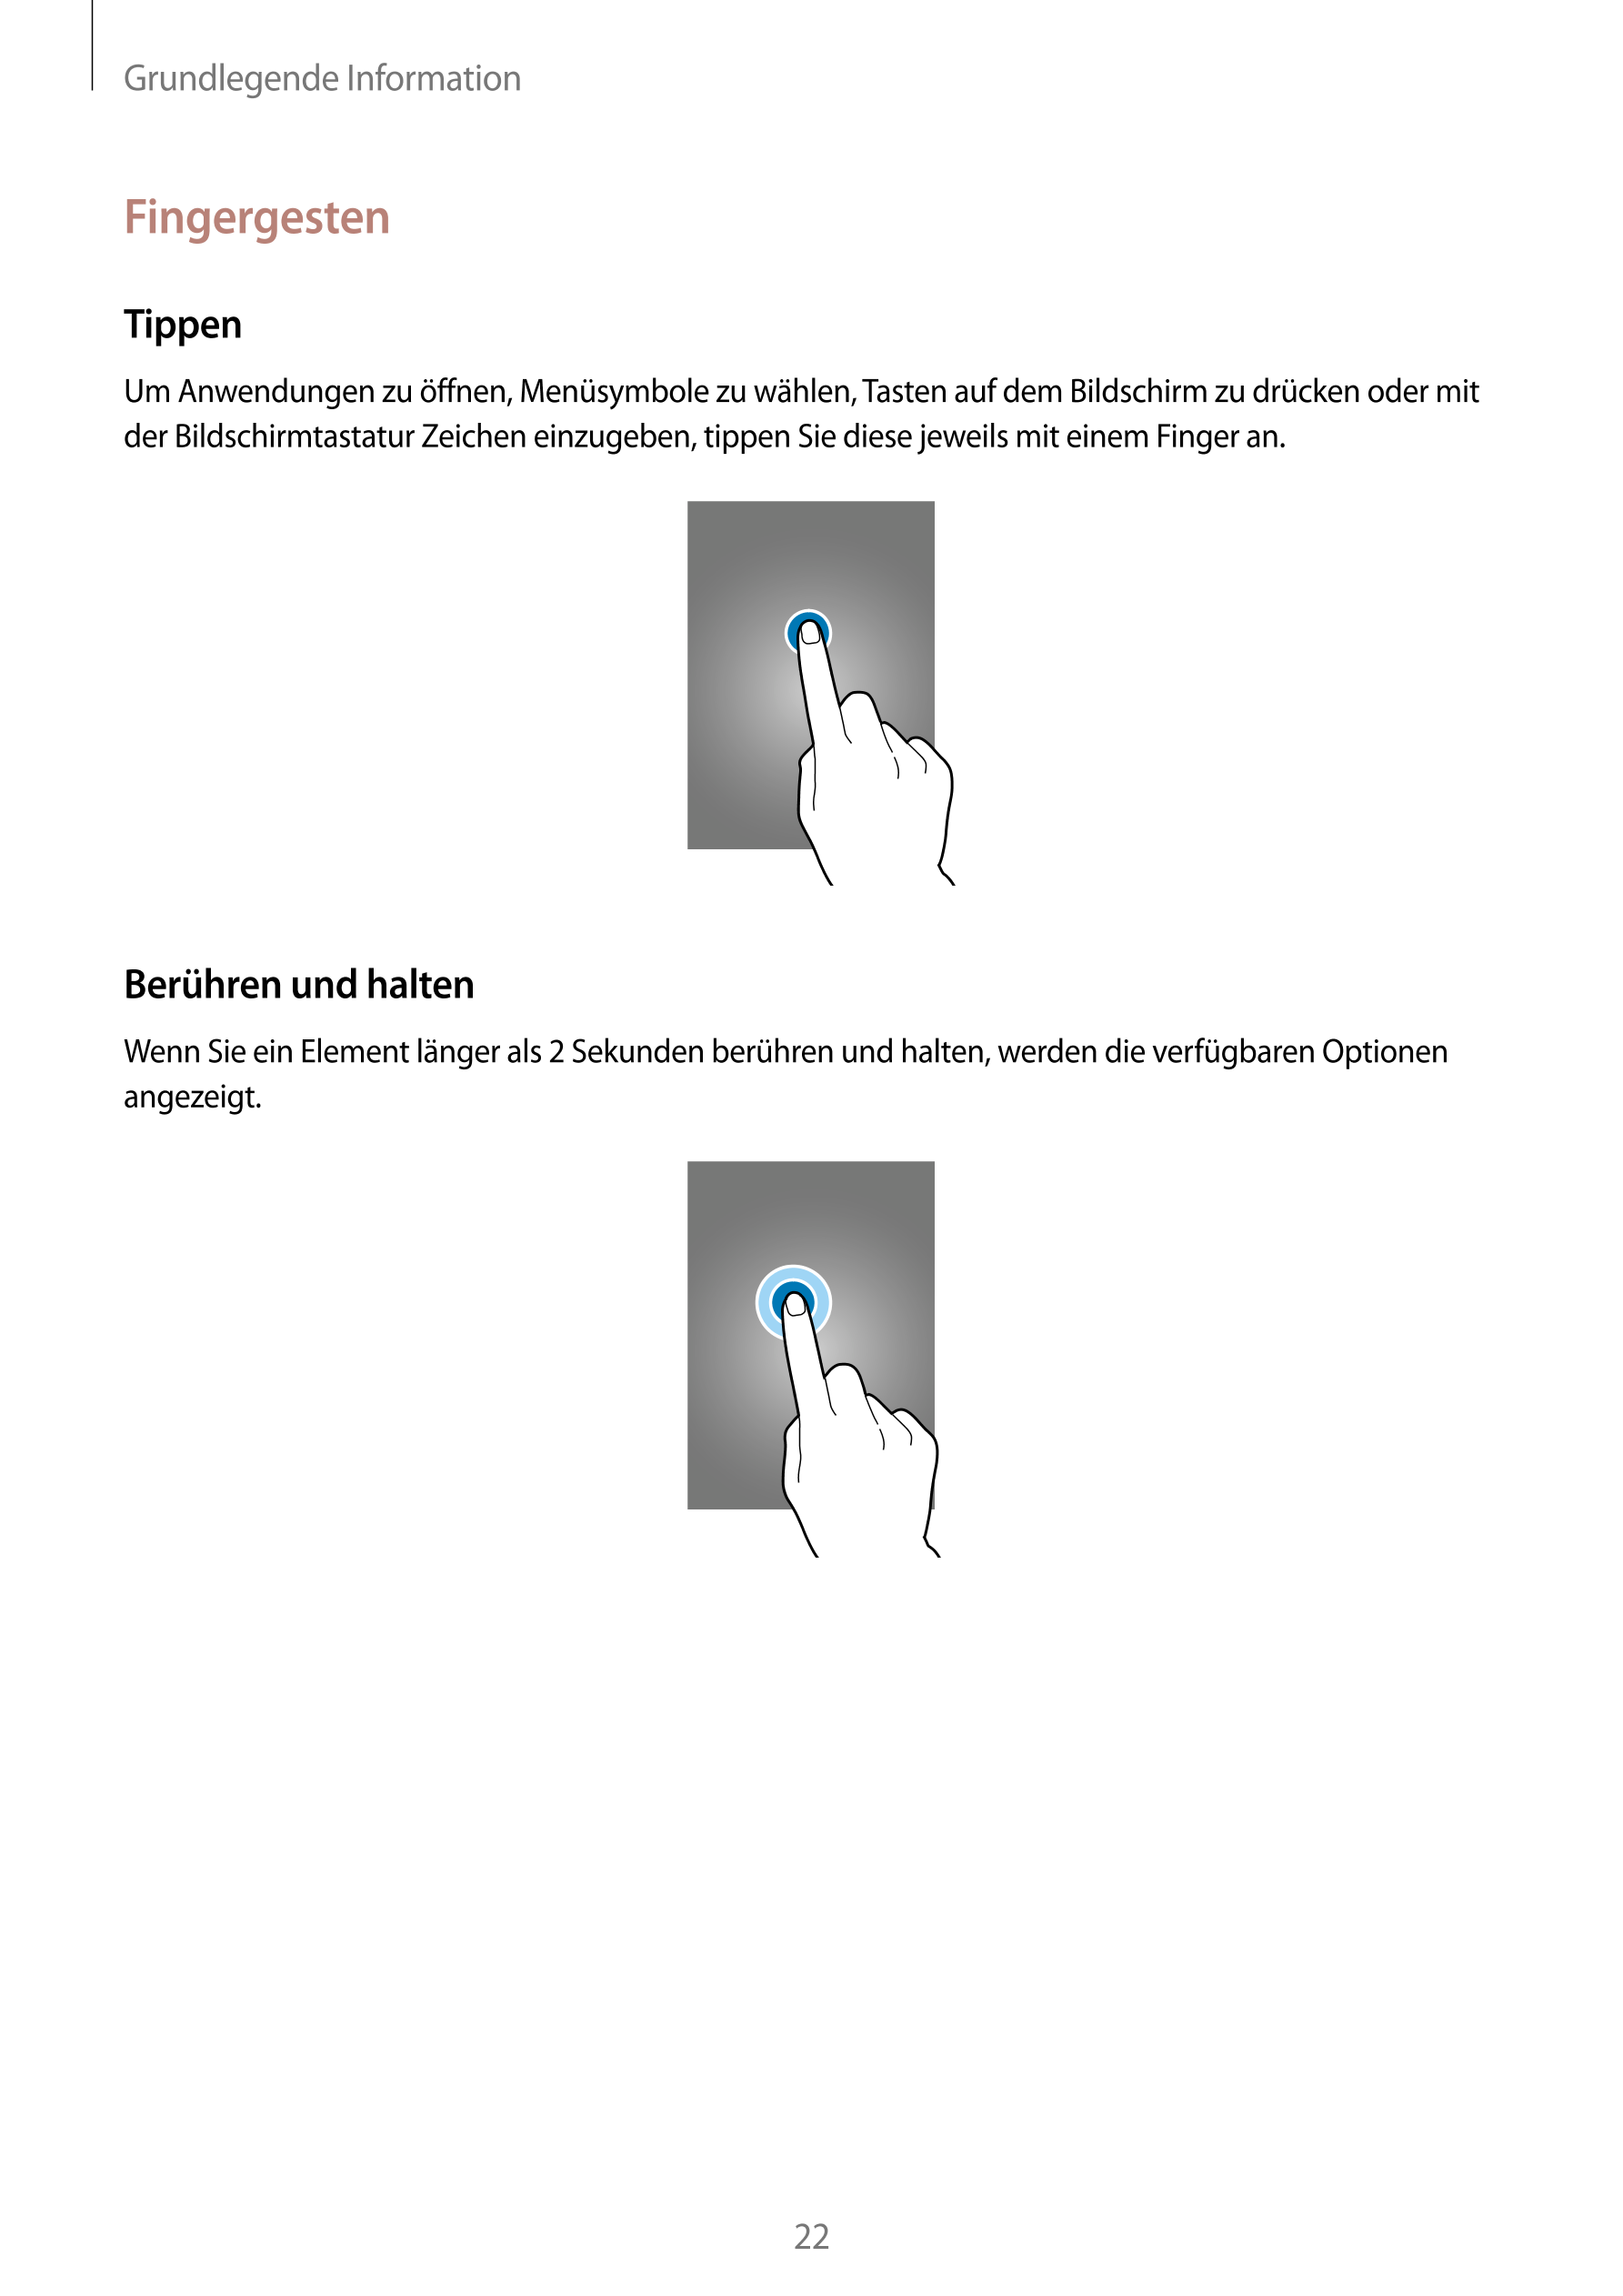 Grundlegende Information
Fingergesten
Tippen
Um Anwendungen zu öffnen, Menüsymbole zu wählen, Tasten auf dem Bildschirm zu drück